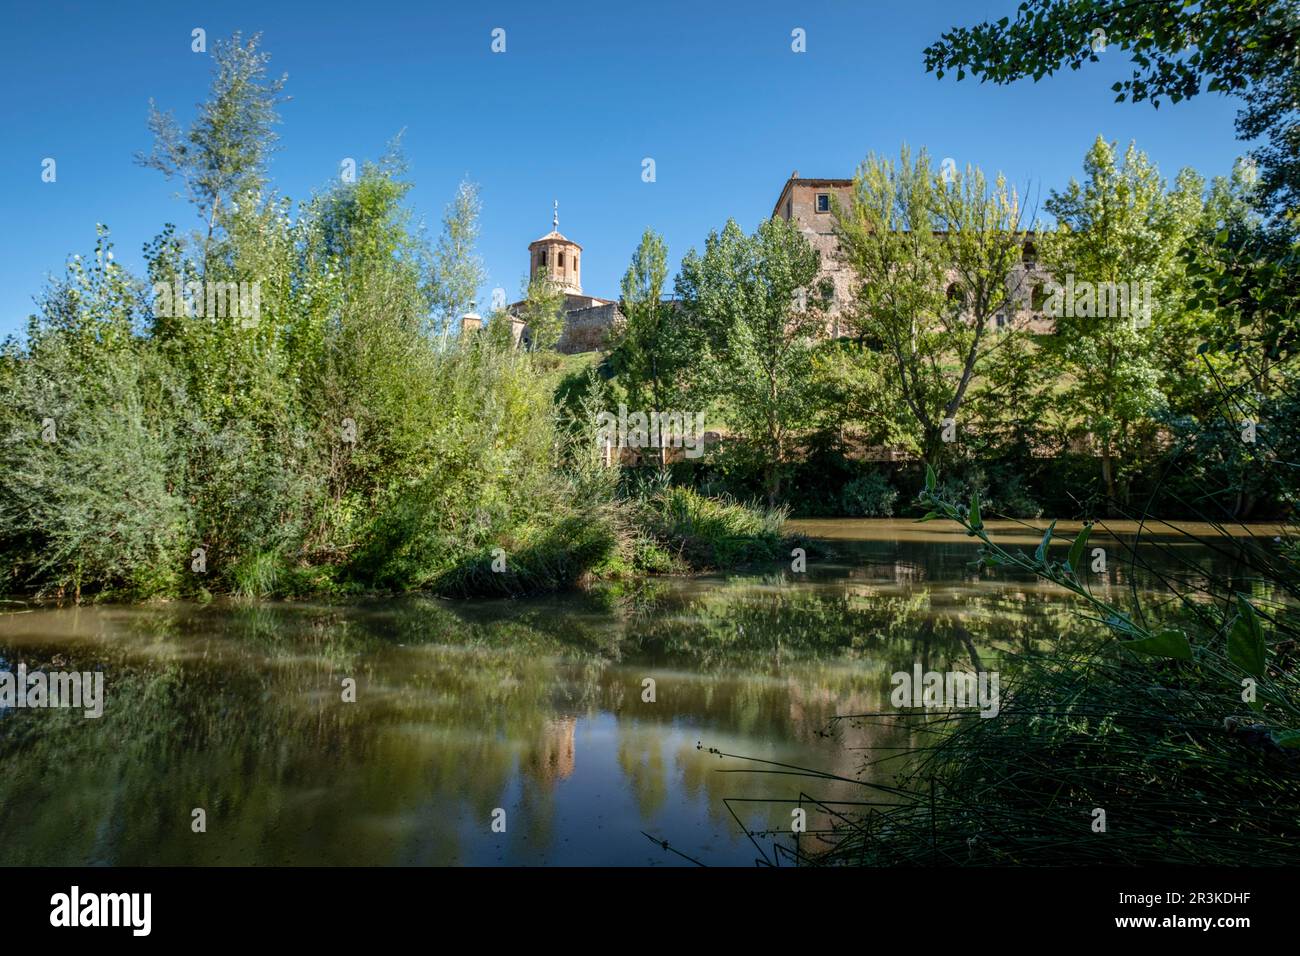 parque de la Arboleda, Almazán, Soria, comunidad autónoma de Castilla y León, Spain, Europe. Stock Photo